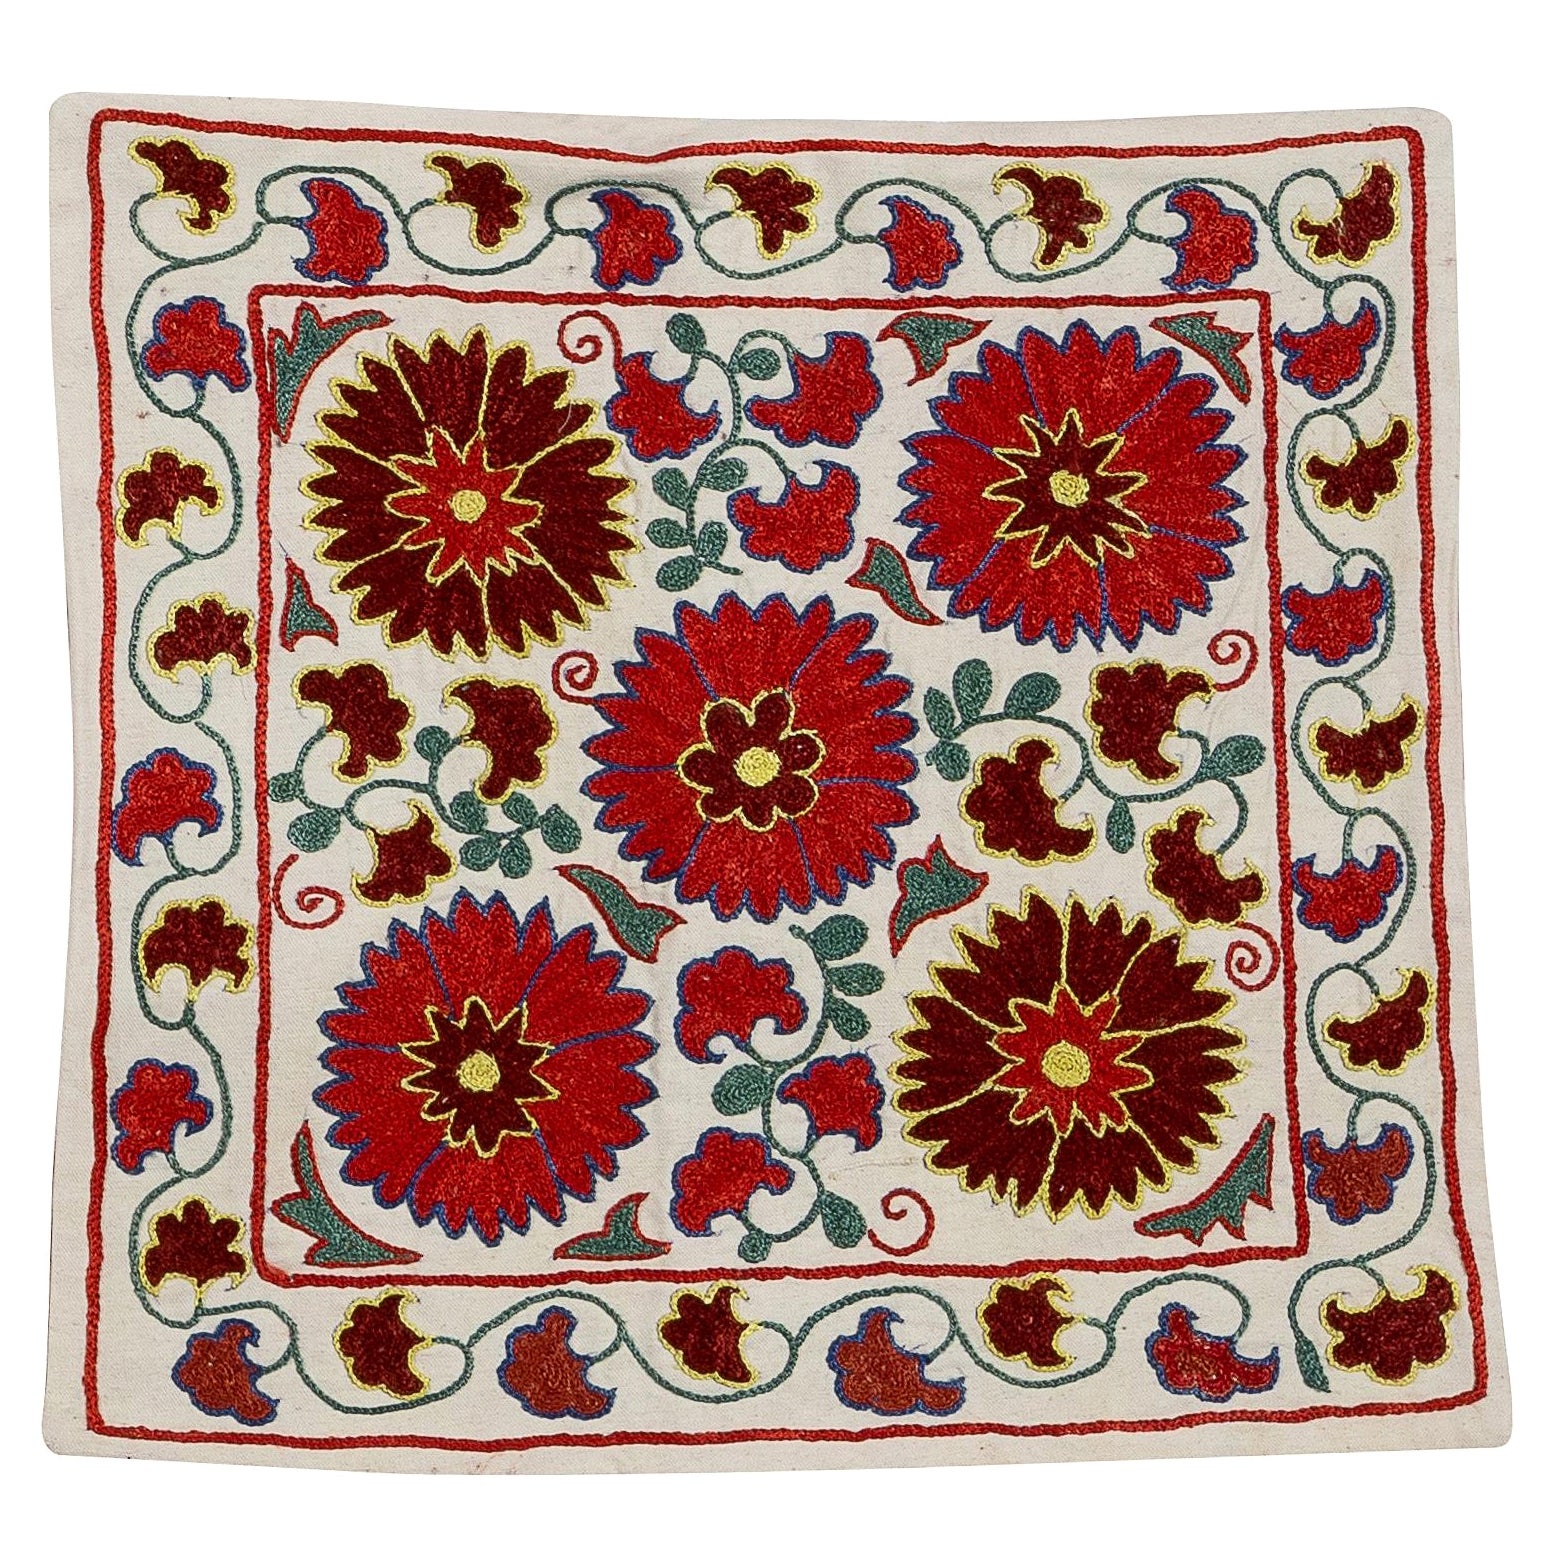  Coussin coussin brodé de 18 po. x 18 po. avec motif floral, coussin en dentelle de décoration intérieure